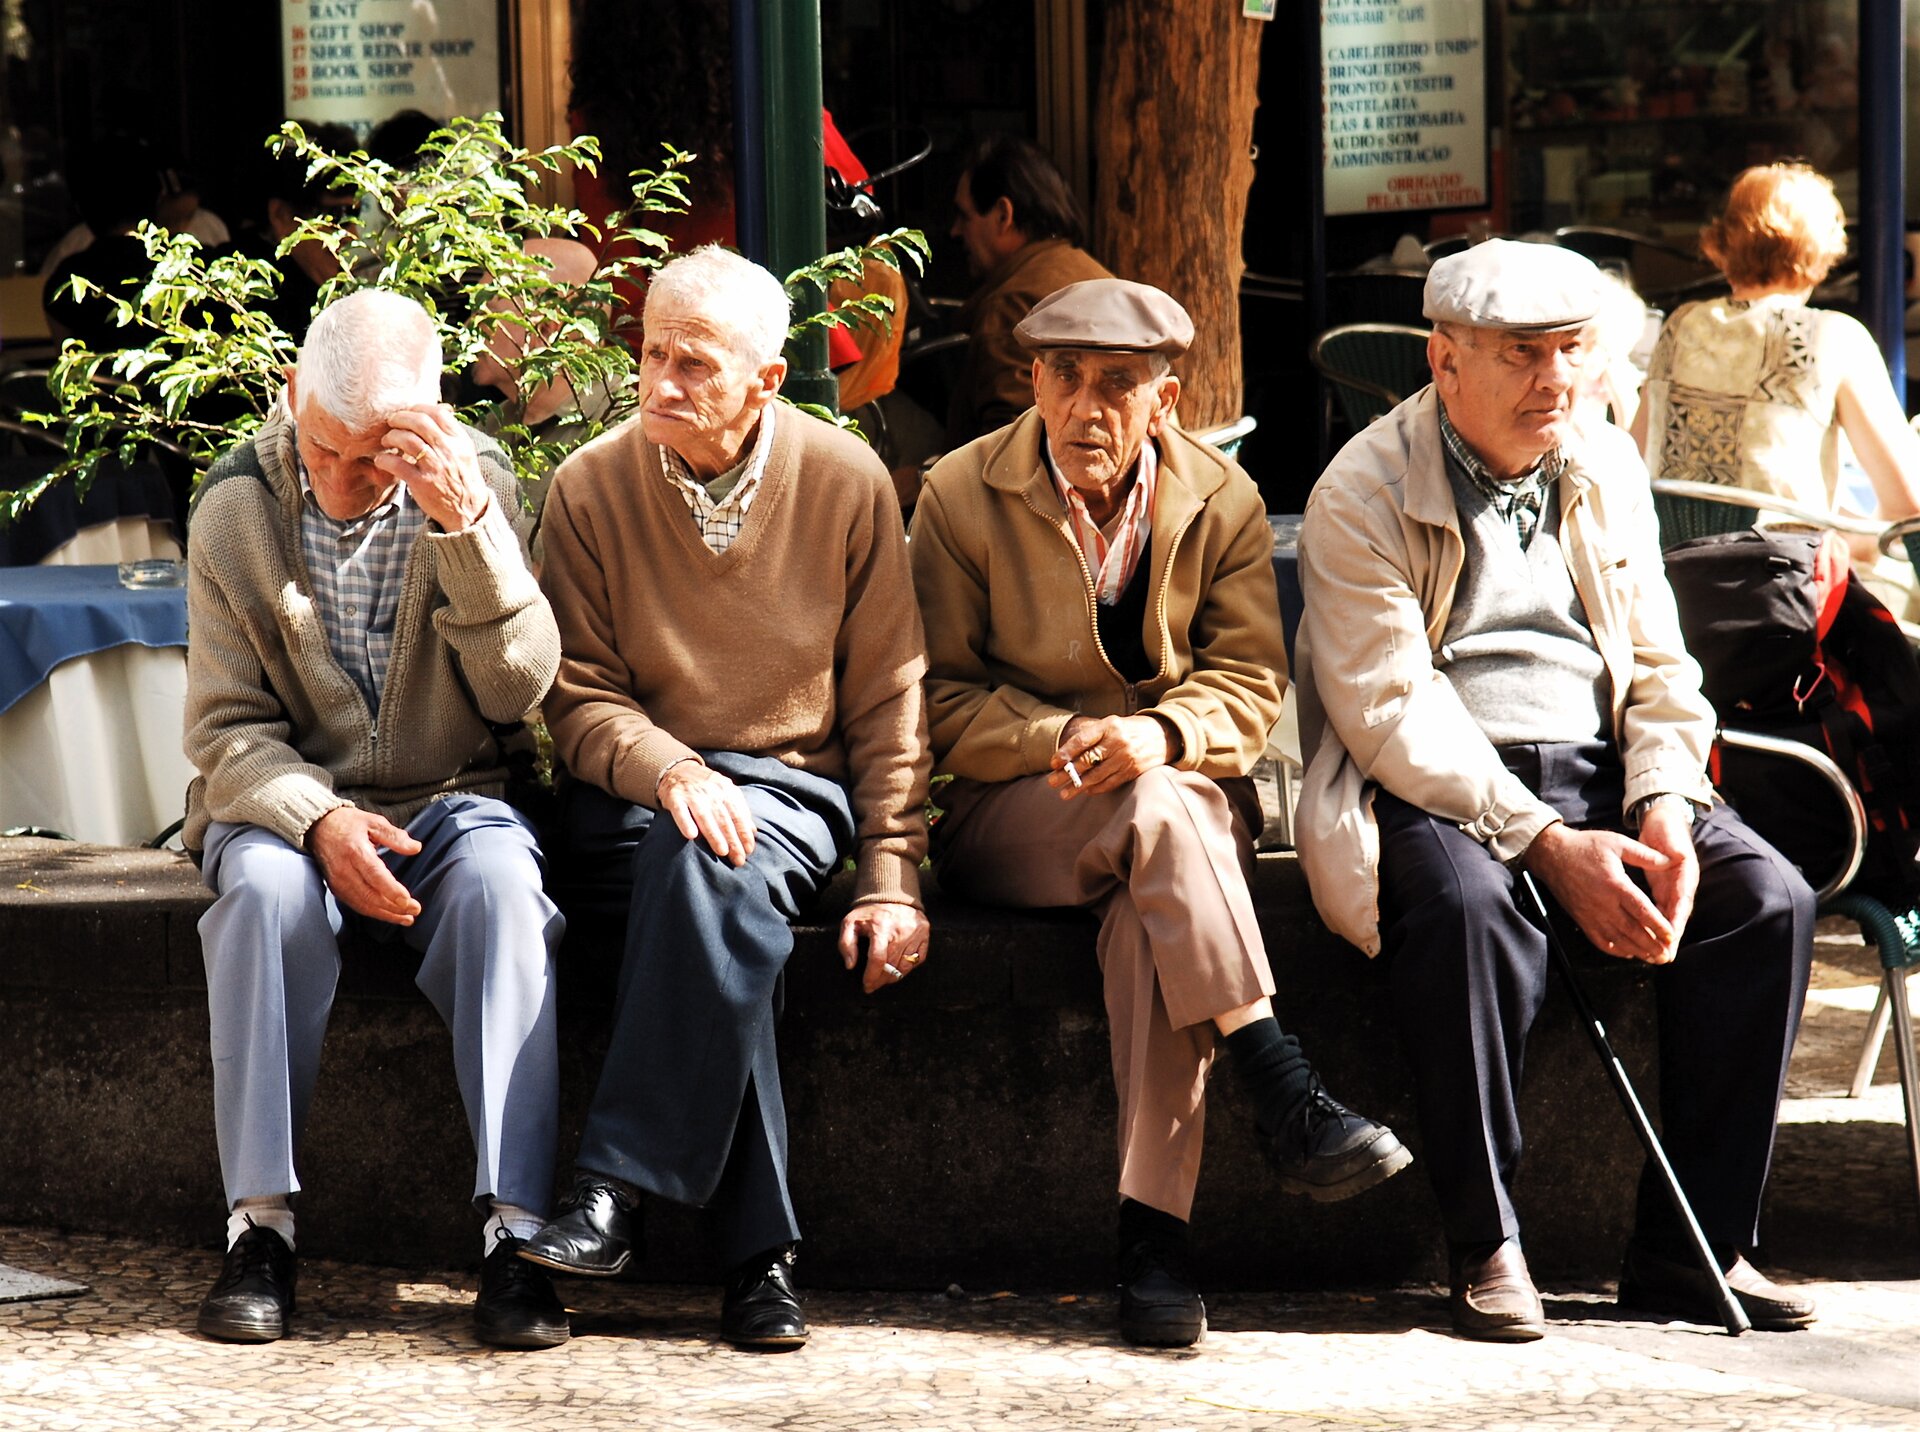 Na zdjęciu czterej mężczyźni w starszym wieku. Siwe włosy, pomarszczone twarze. Siedzą na murku przed kawiarnią. Jeden trzyma laskę.